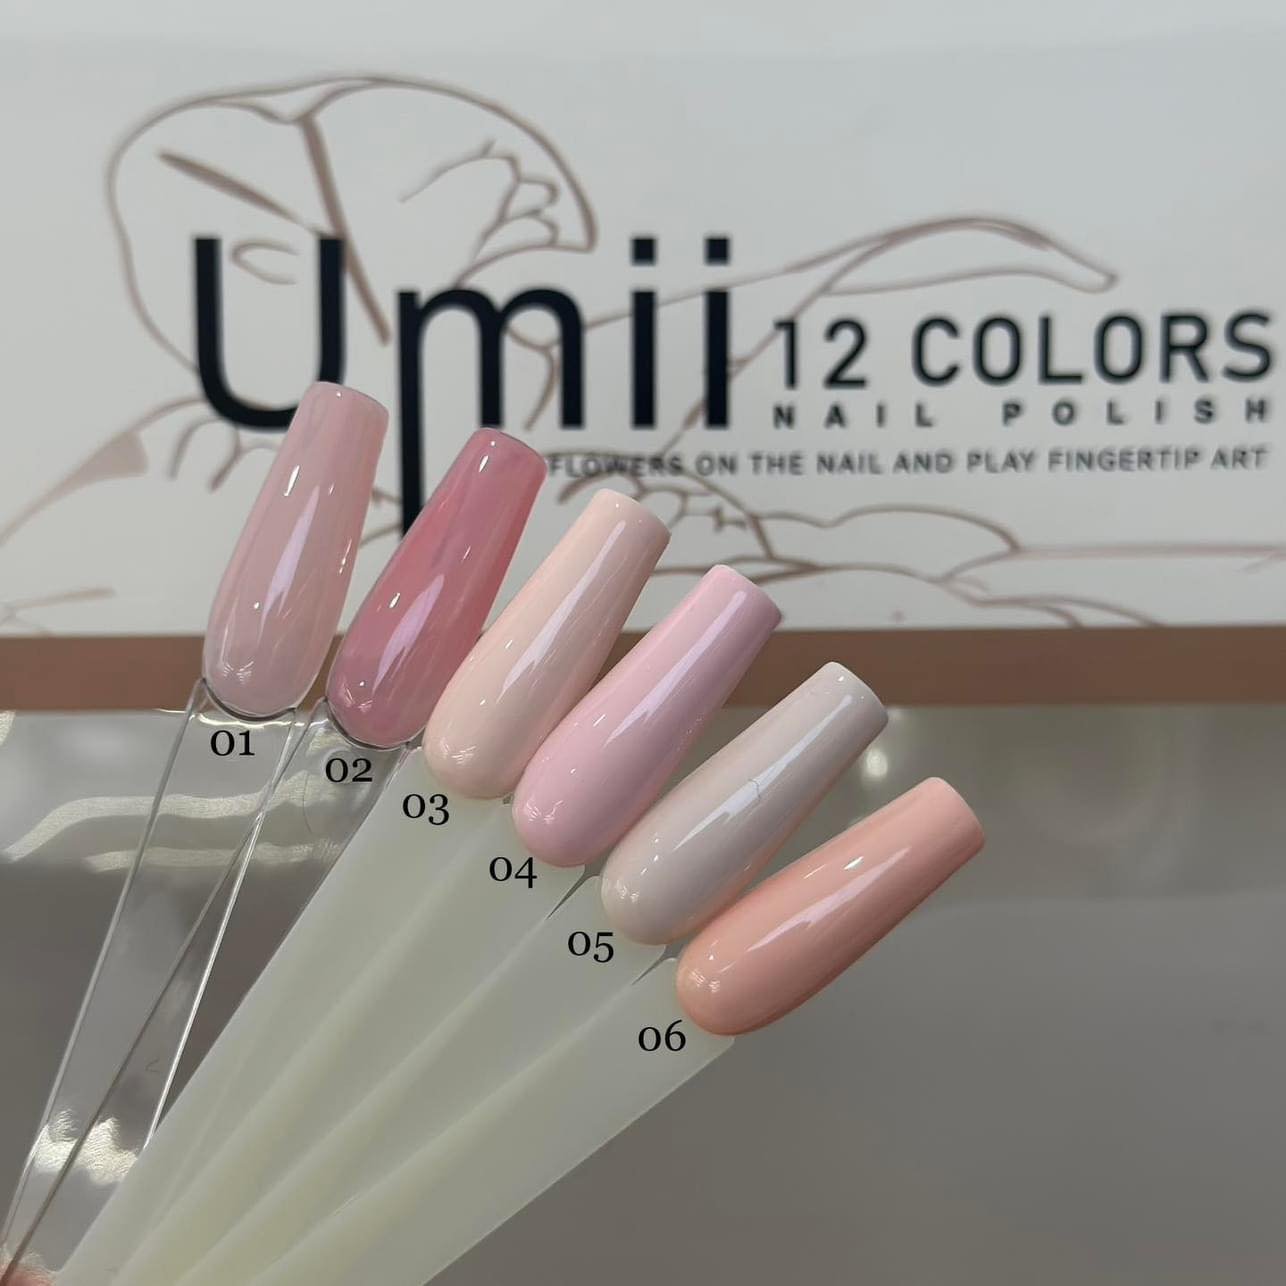 Set sơn hồng umii ( 12 màu) +tặng kèm bảng màu